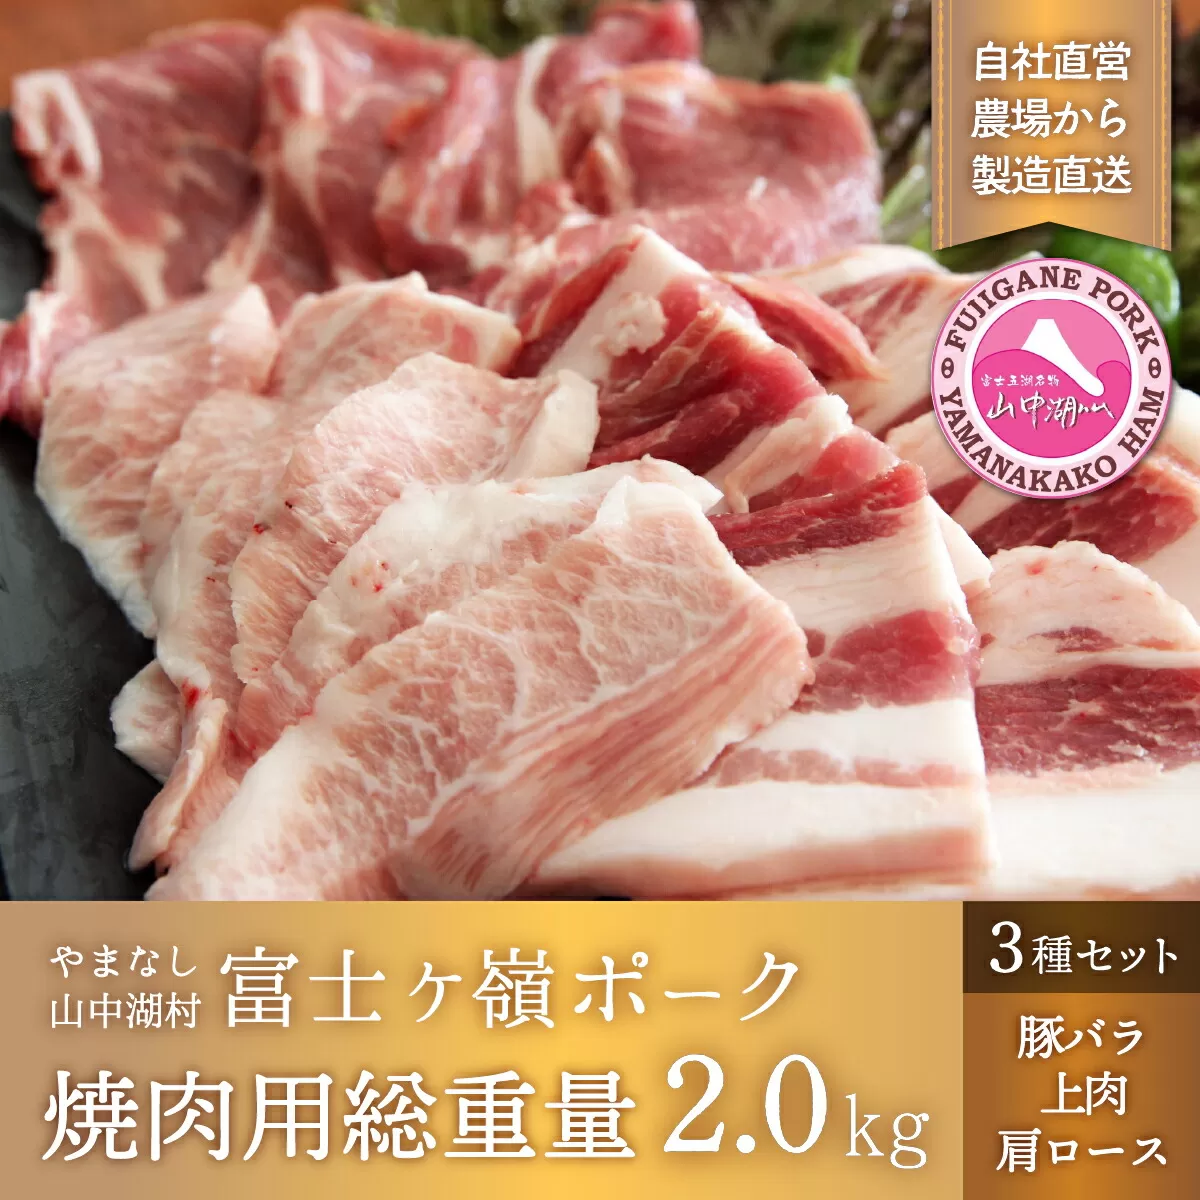 富士ケ嶺ポーク焼肉用総重量2.0kg YB043